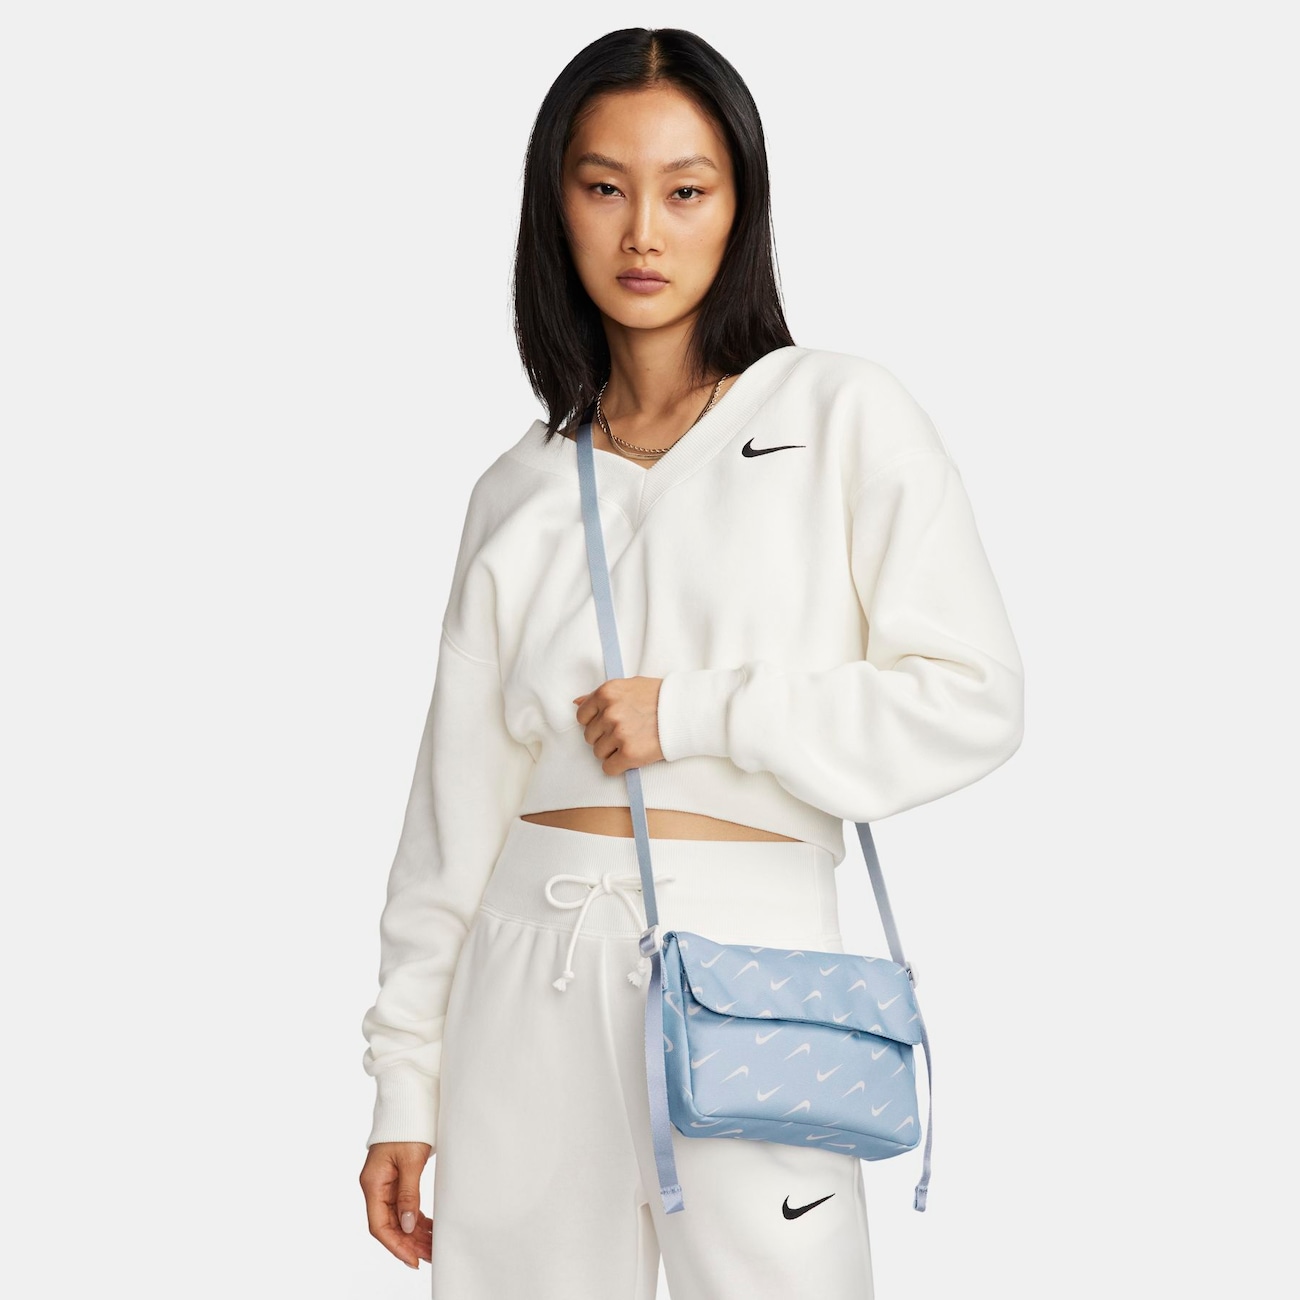 Bolsa Transversal Nike Sportswear Futura 365 Feminina